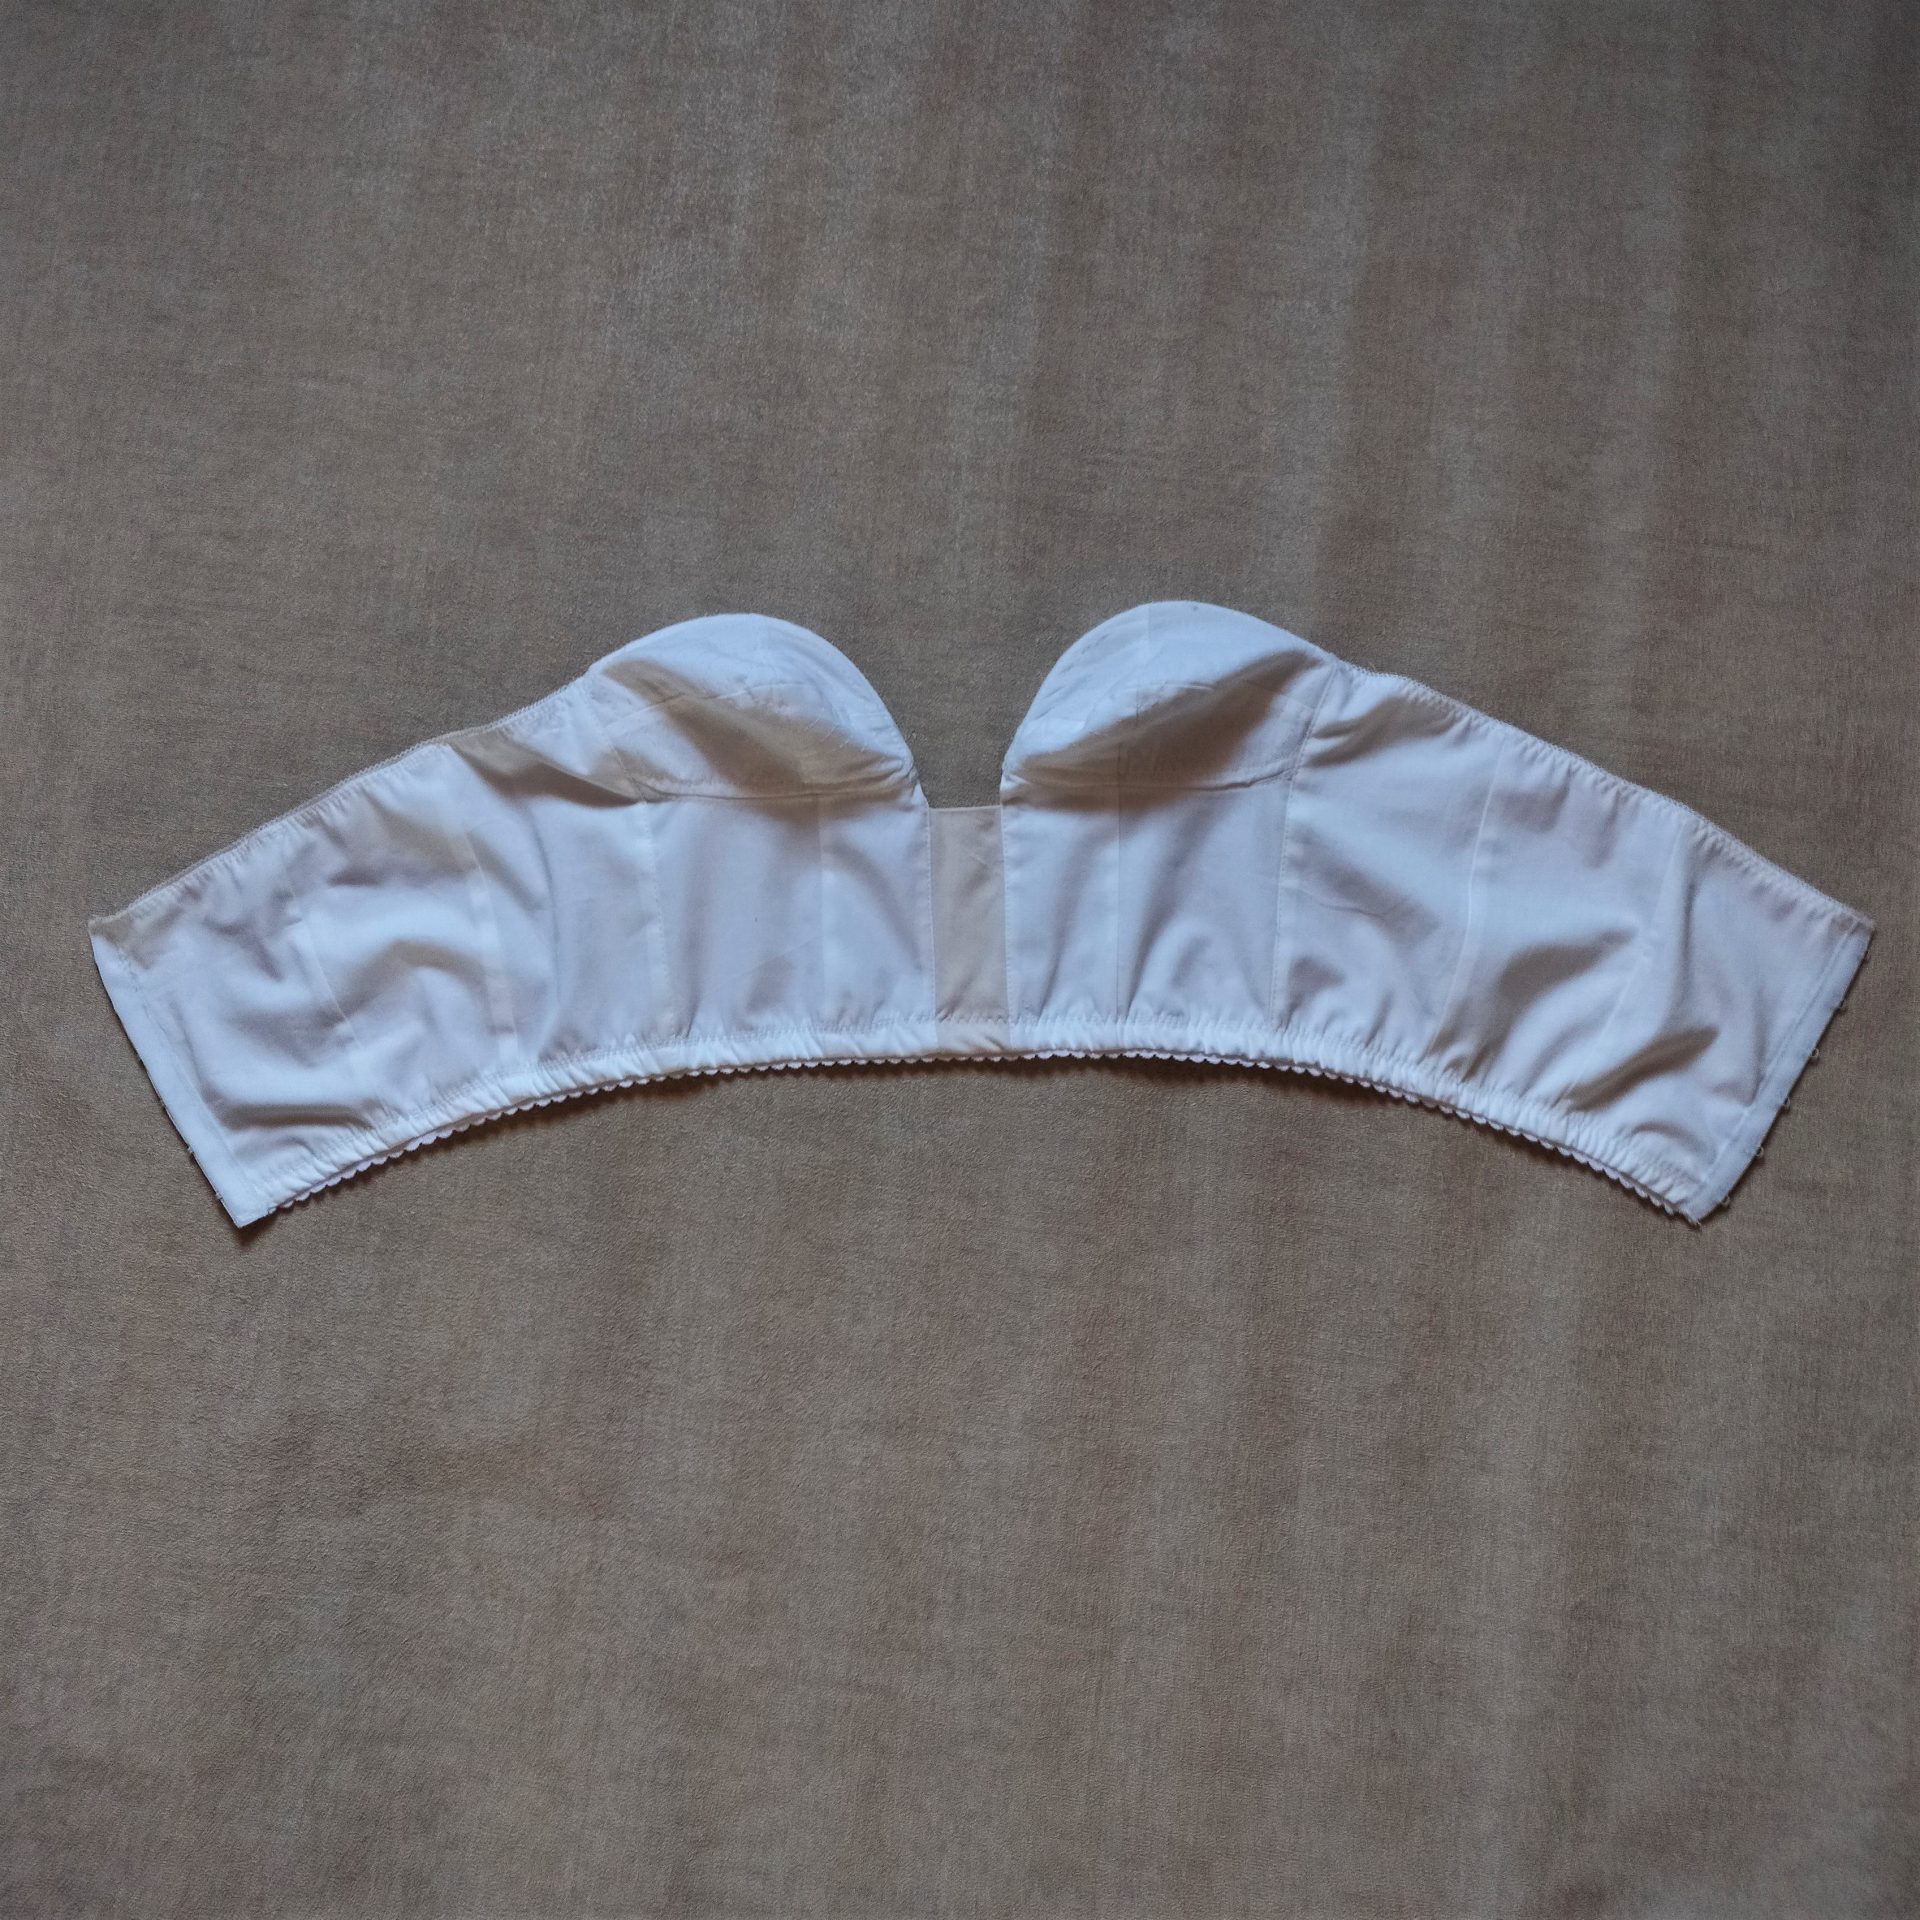 1950s longline bra pattern, Strapless longline bra pattern